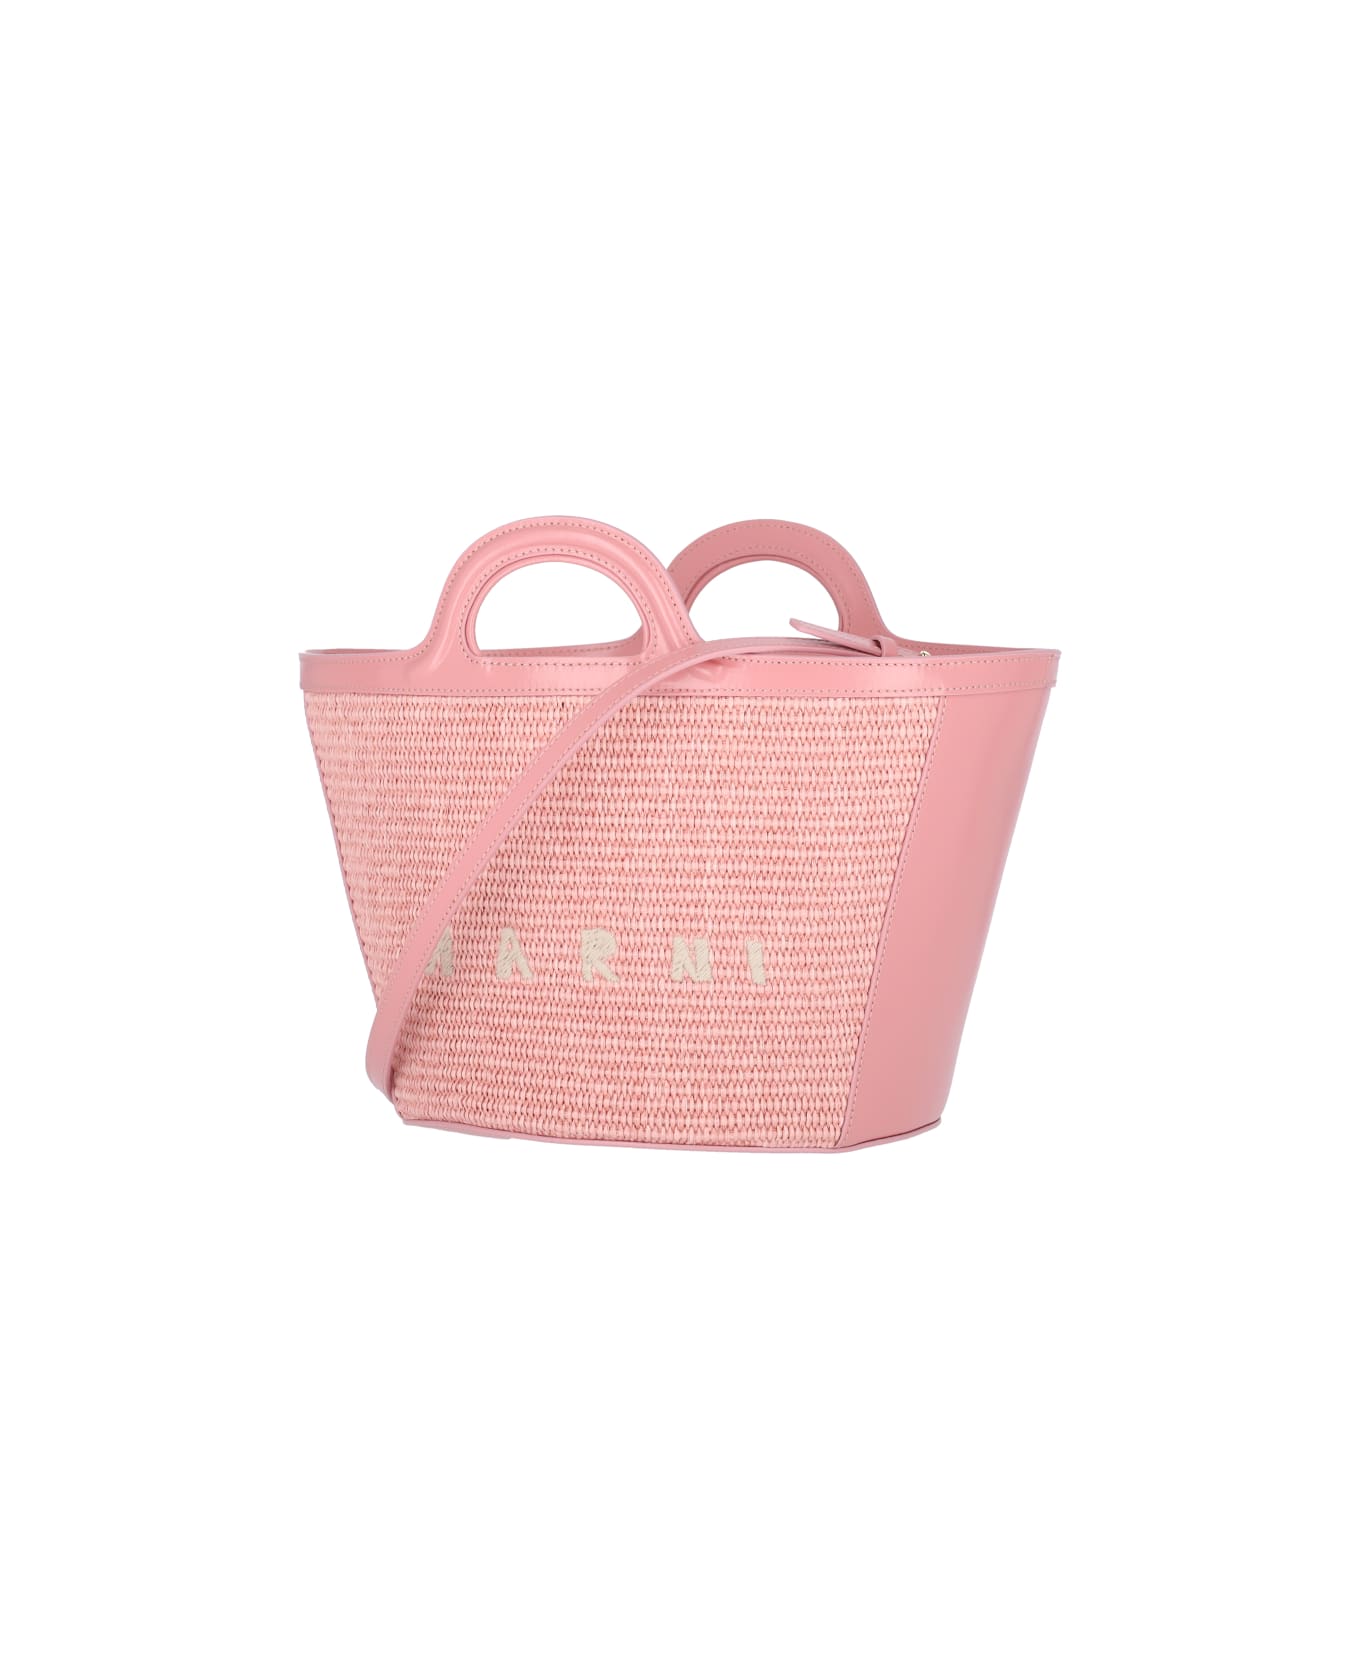 Marni 'tropicalia' Small Tote Bag - Pink